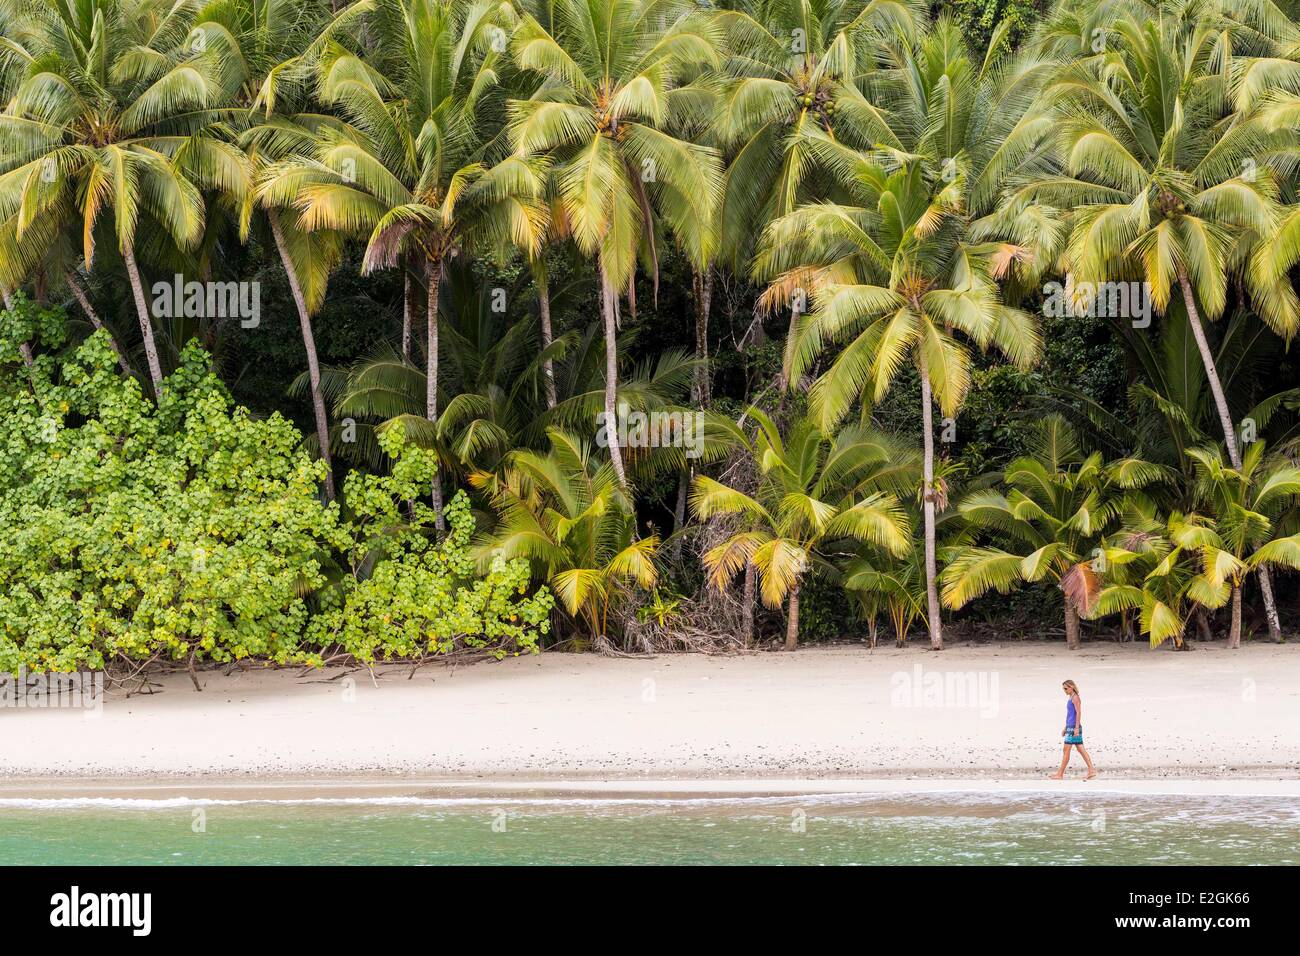 Provinz Veraguas Panama als Weltkulturerbe von der UNESCO seit 2005 Rancheria Insel Palmen gesäumten Strand Golf von Chiriquí Nationalpark Coiba aufgeführt Stockfoto